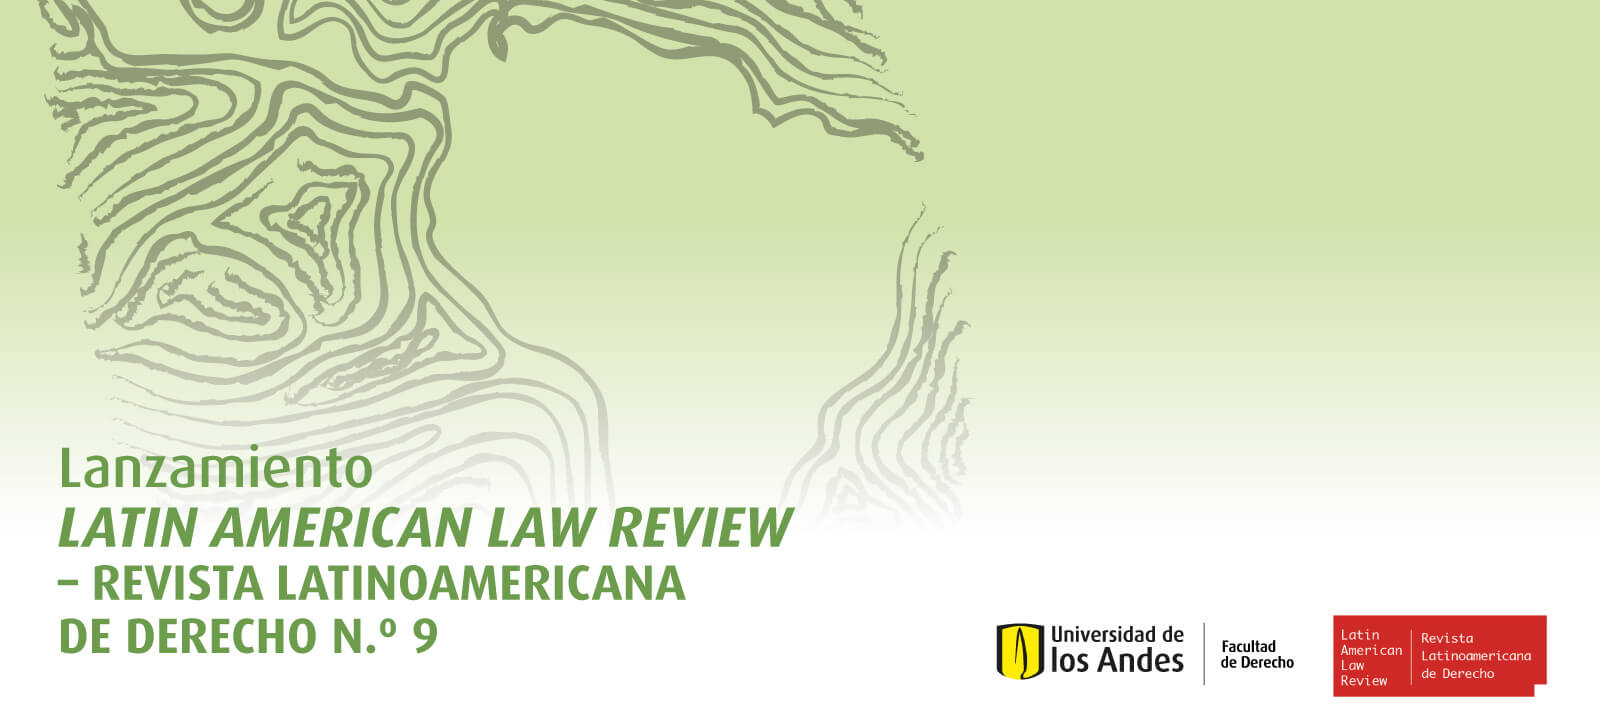 El problema de las reformas constitucionales en América Latina